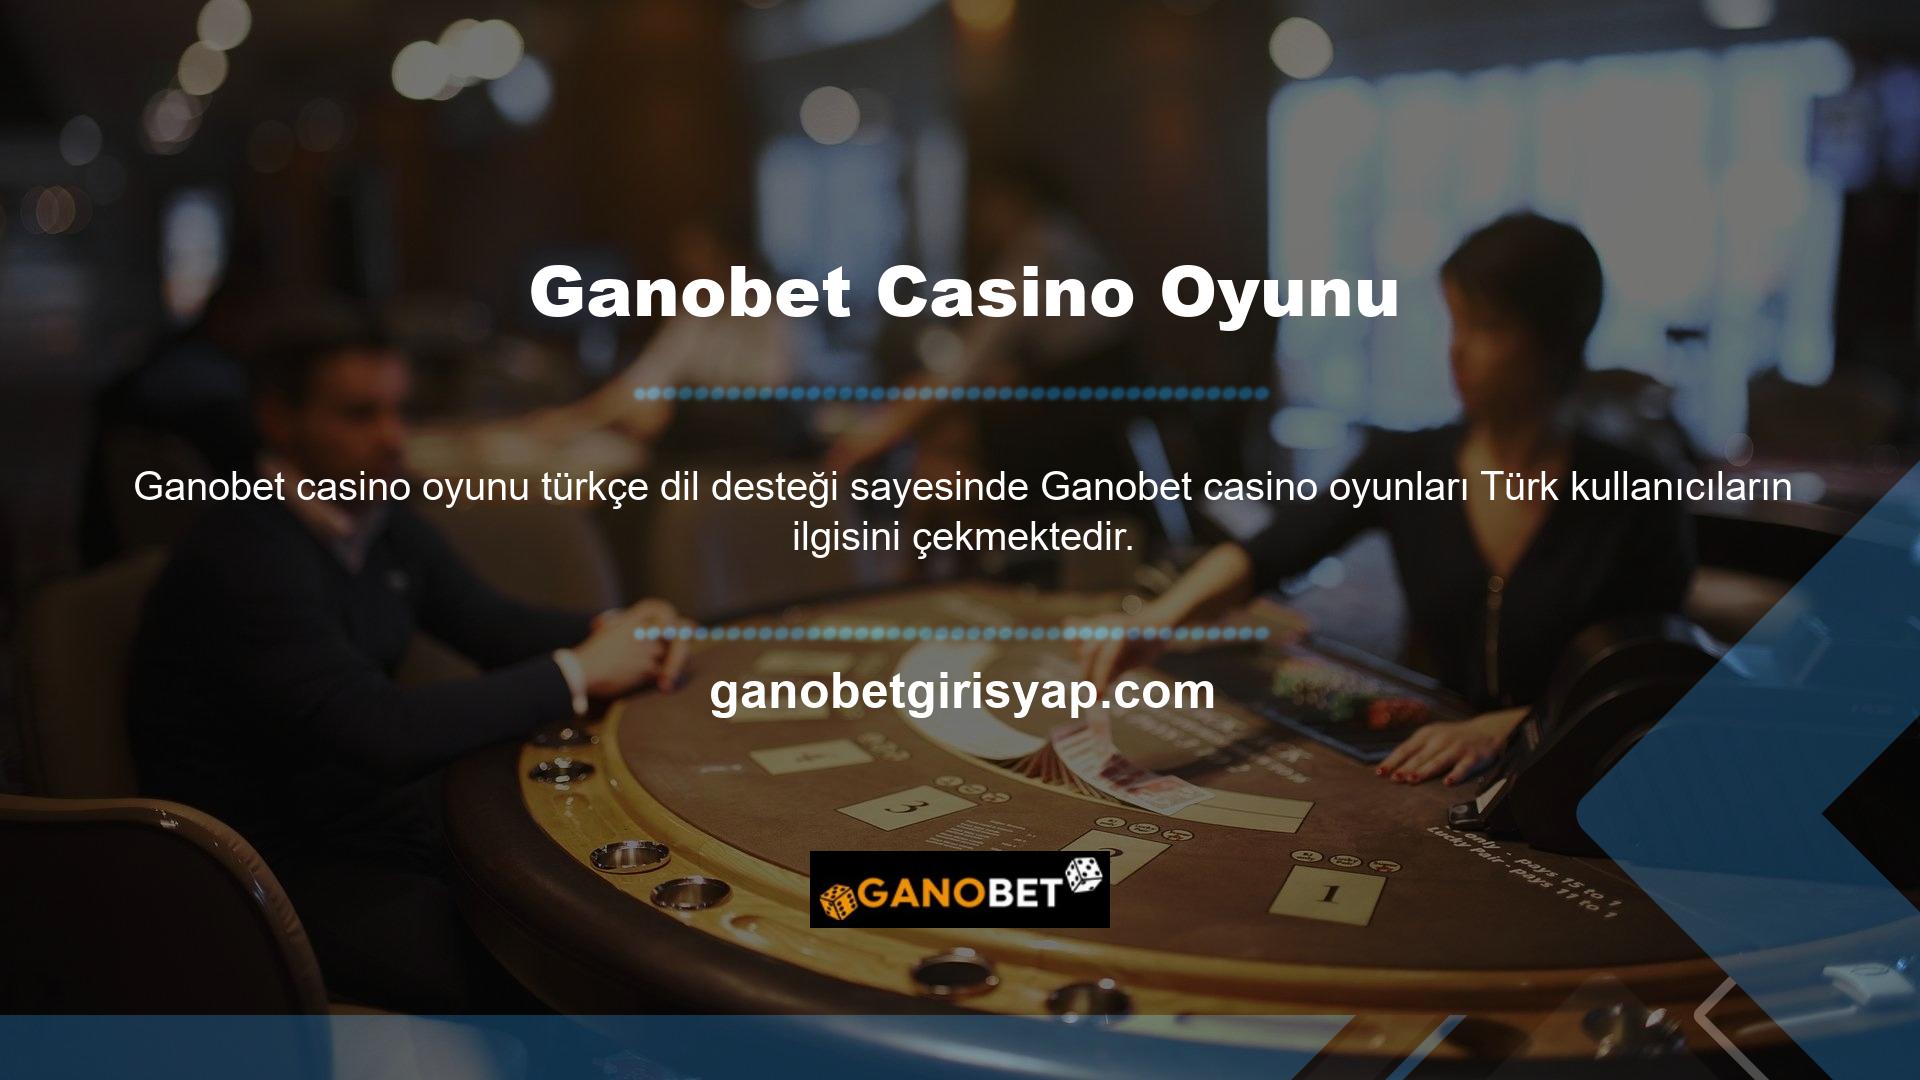 Ganobet aynı zamanda tamamen gelişmiş üyelere yönelik bir casino sitesidir, dolayısıyla oynaması çok eğlencelidir